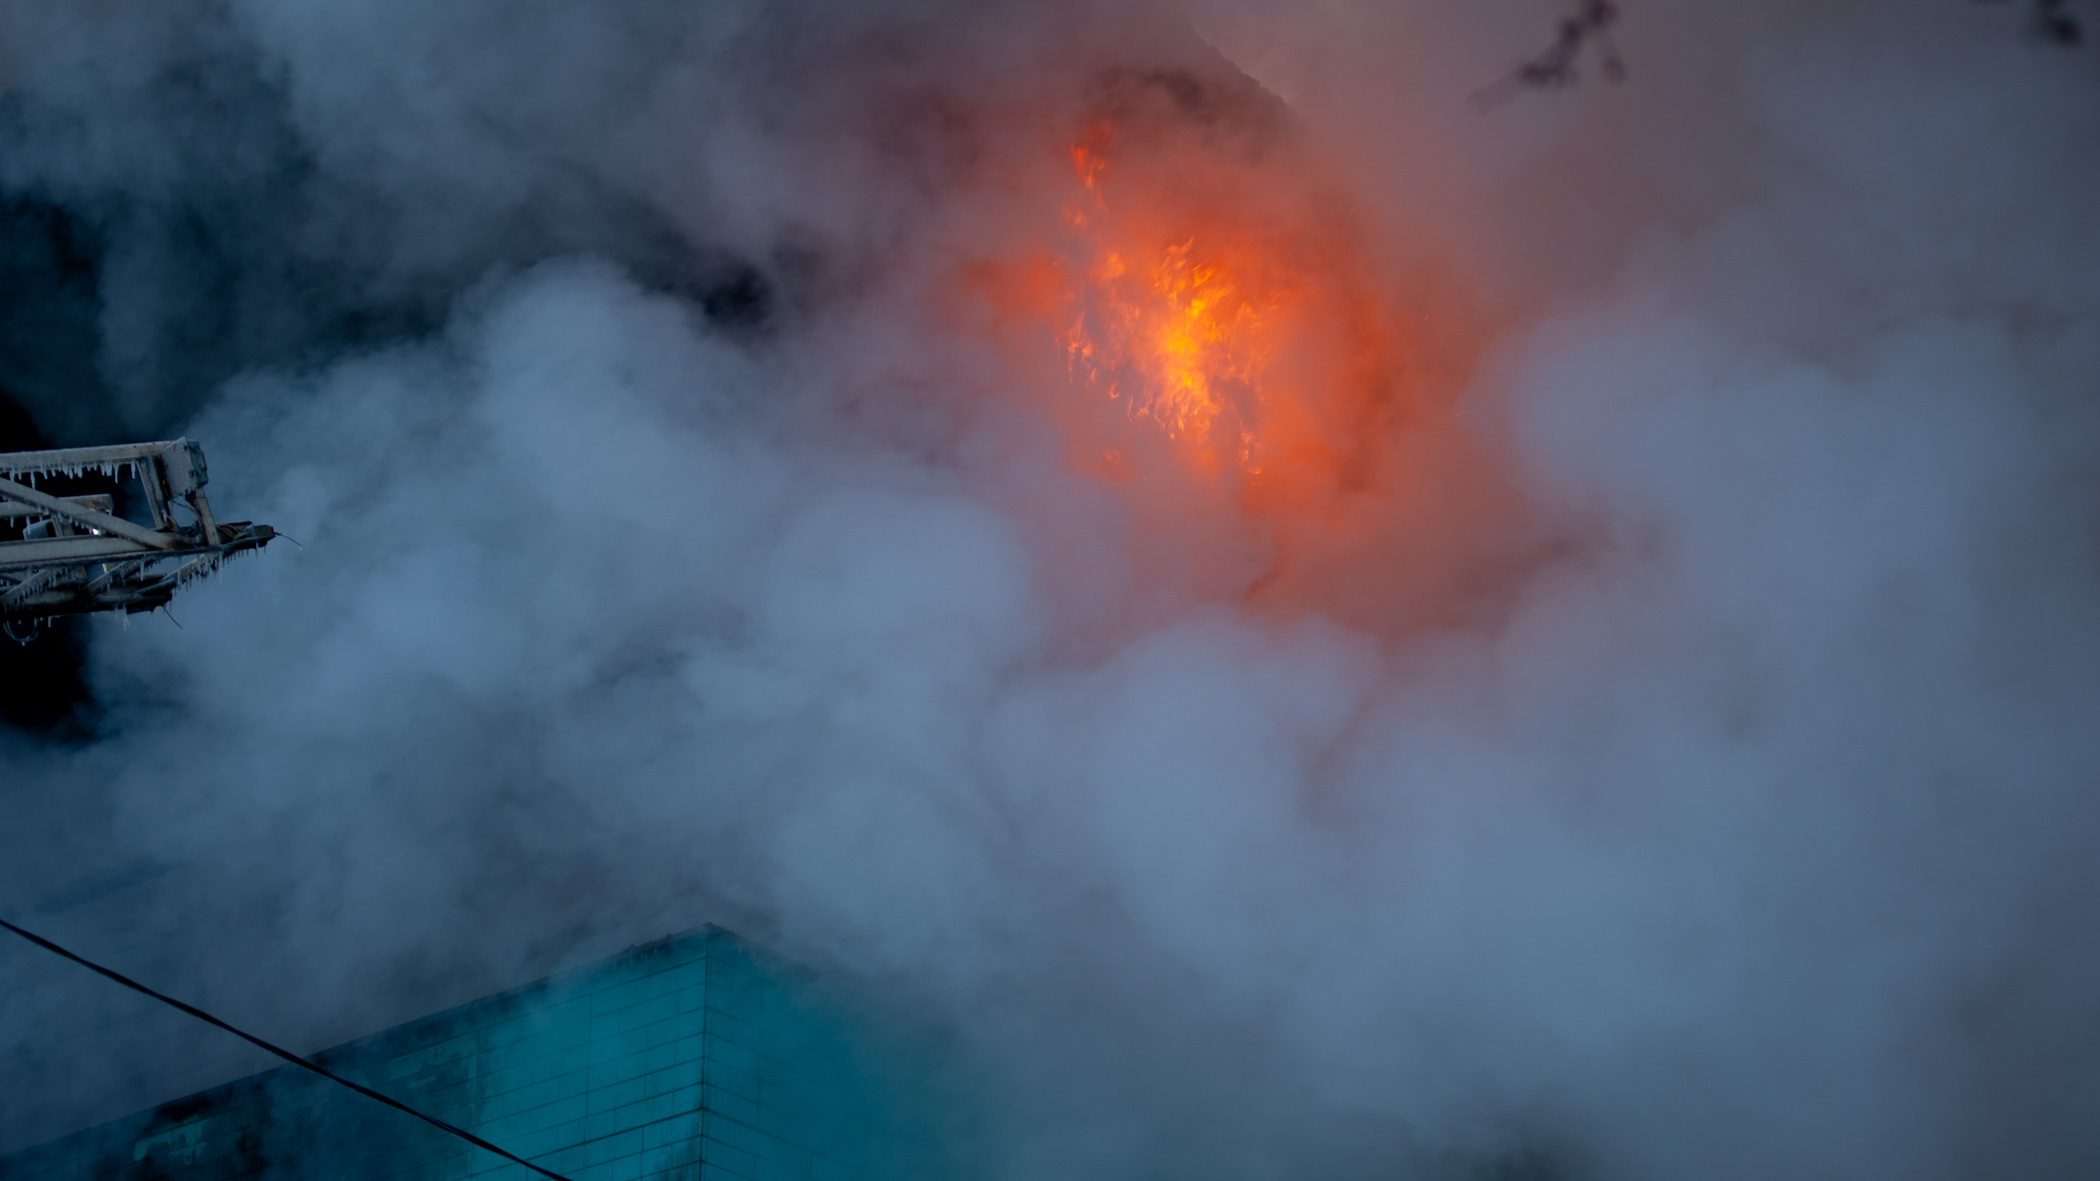 Опубликованы фото с места крупного пожара на авторазборке во Владивостоке